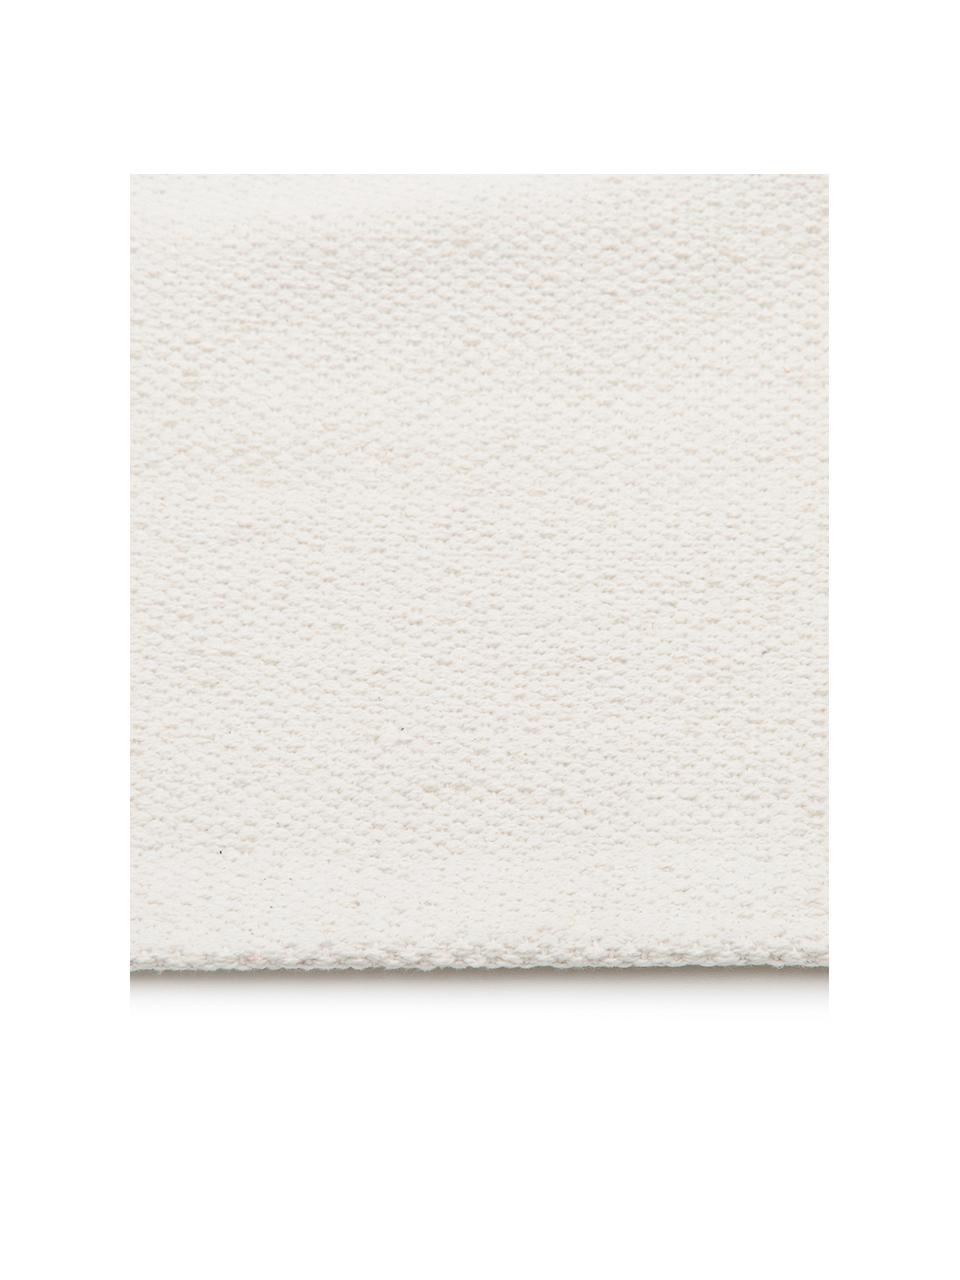 Dünner Baumwollläufer Agneta in Cremeweiss, handgewebt, 100% Baumwolle, Cremeweiss, 70 x 250 cm